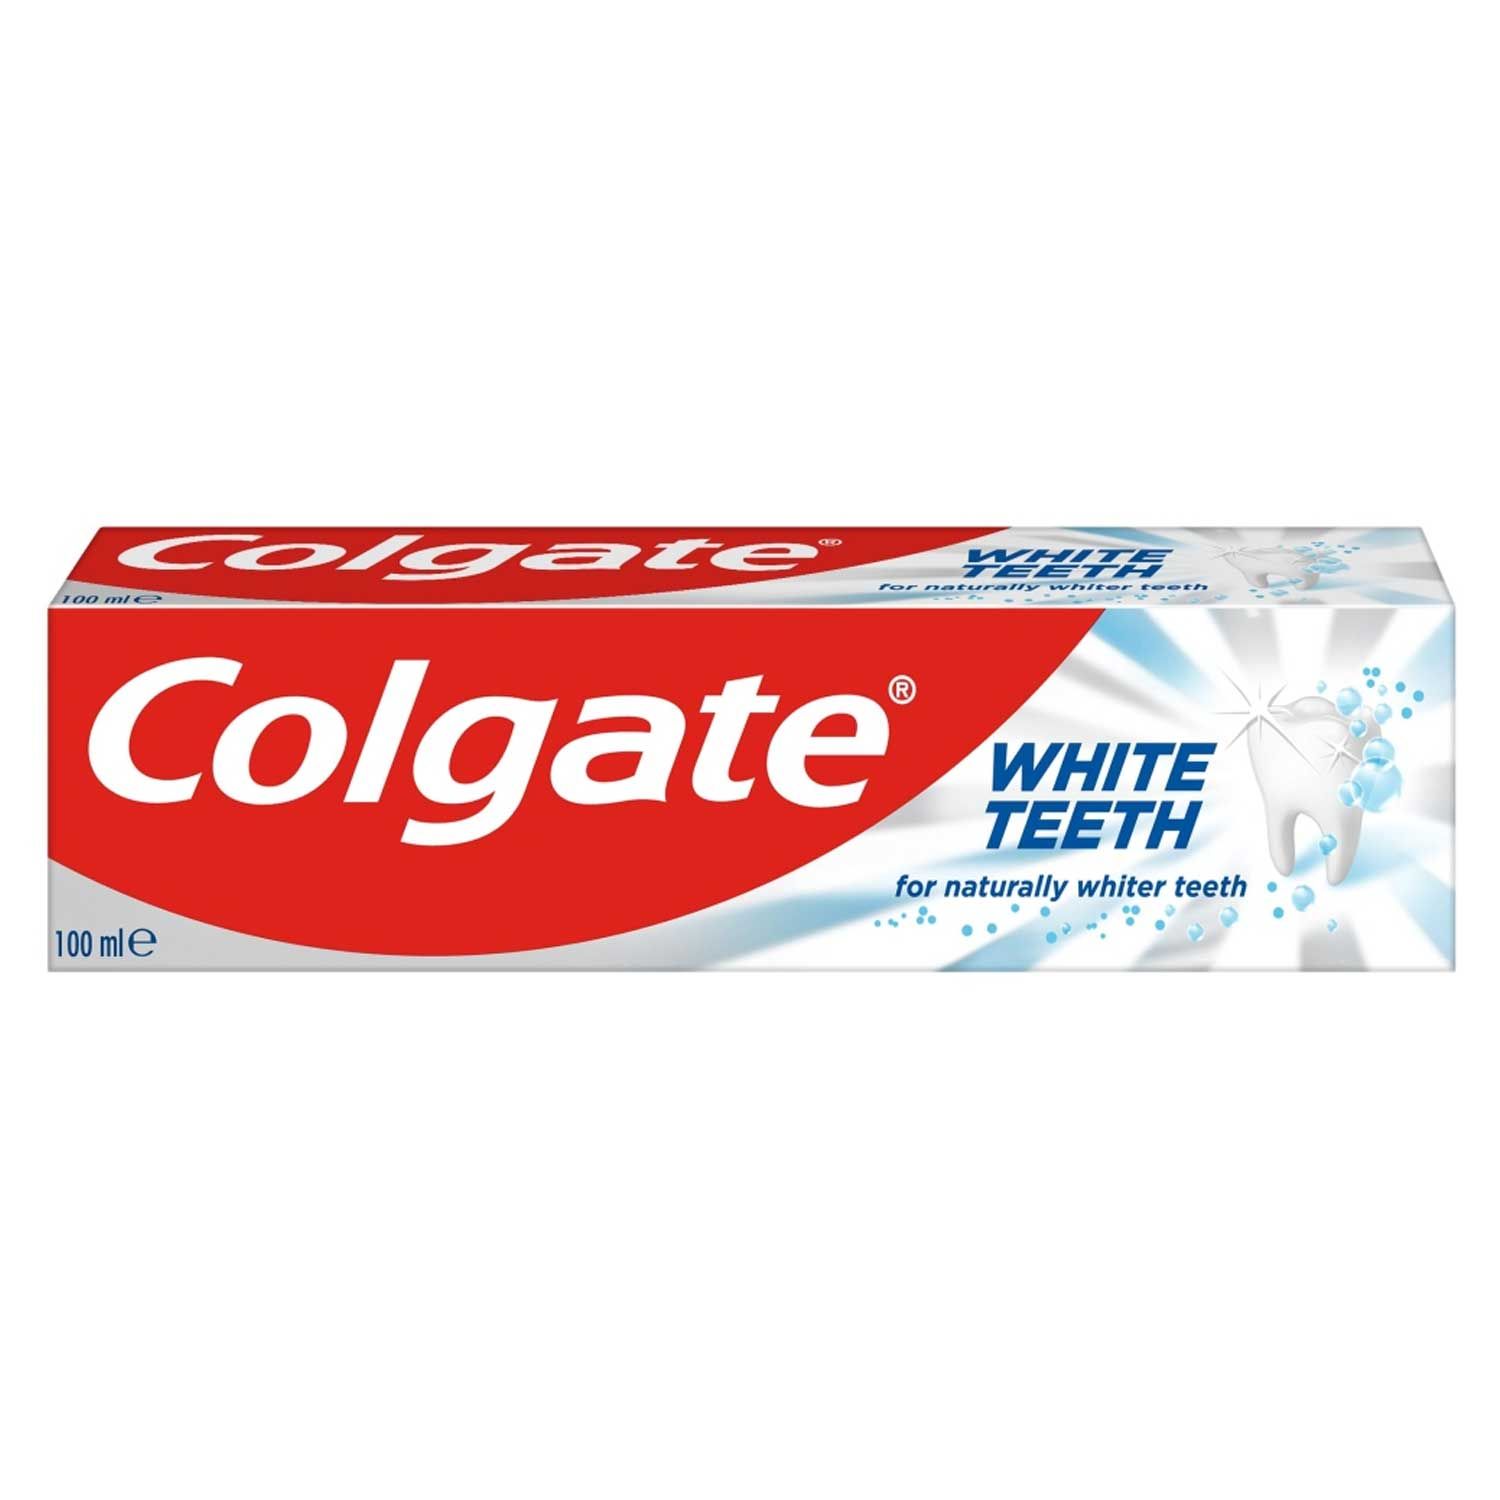 Colgate Toothpaste White Teeth 100ml x 12 Opp 25.10